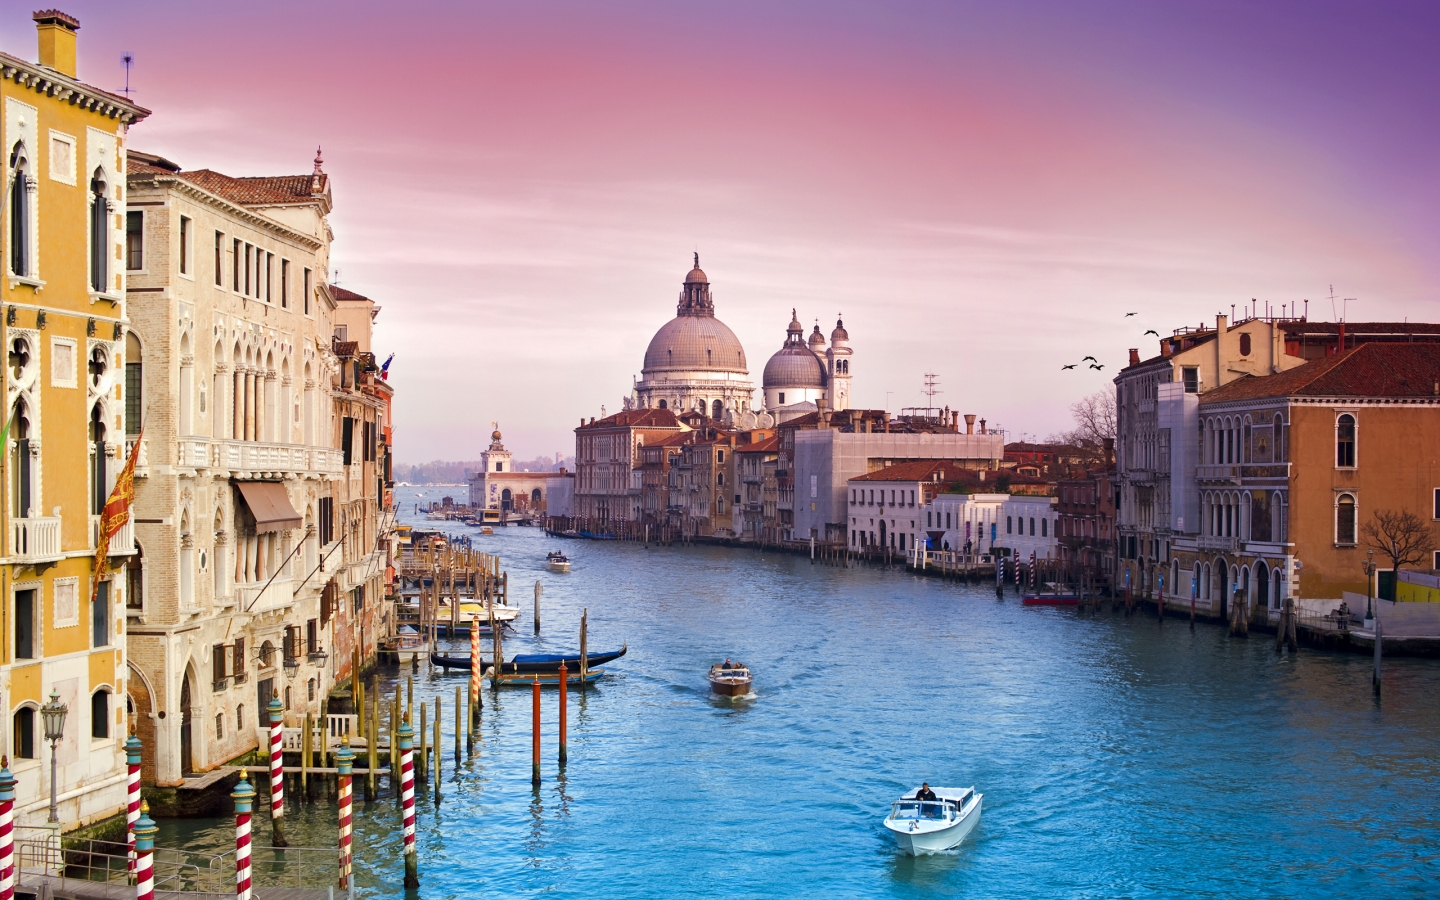 Veni Vidi Venice for 1440 x 900 widescreen resolution